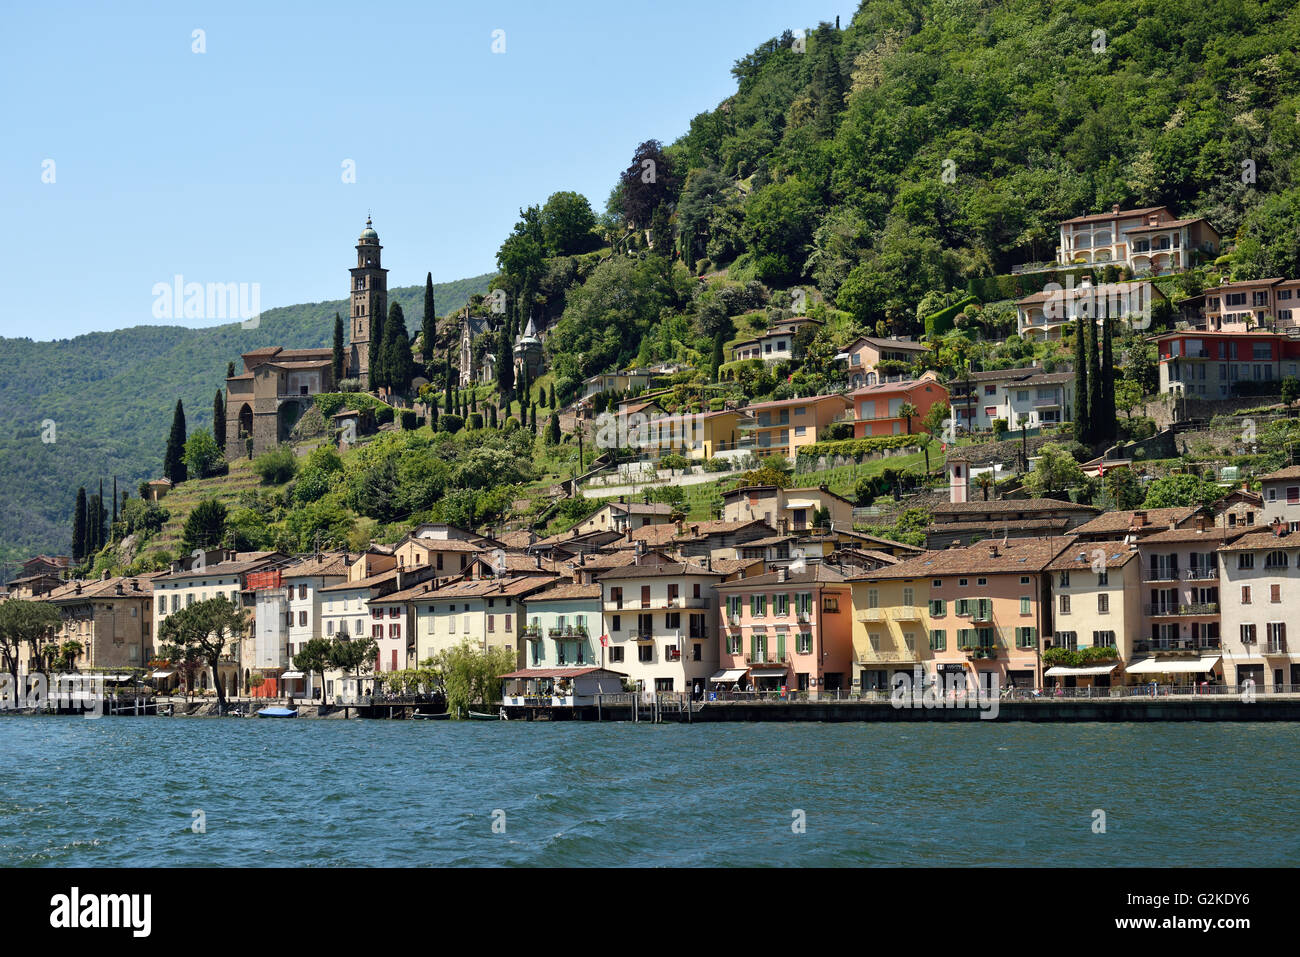 Paseo a orillas del lago con la iglesia de Santa Maria del Sasso, Morcote, Lago de Lugano, en el cantón del Tesino, Suiza Foto de stock